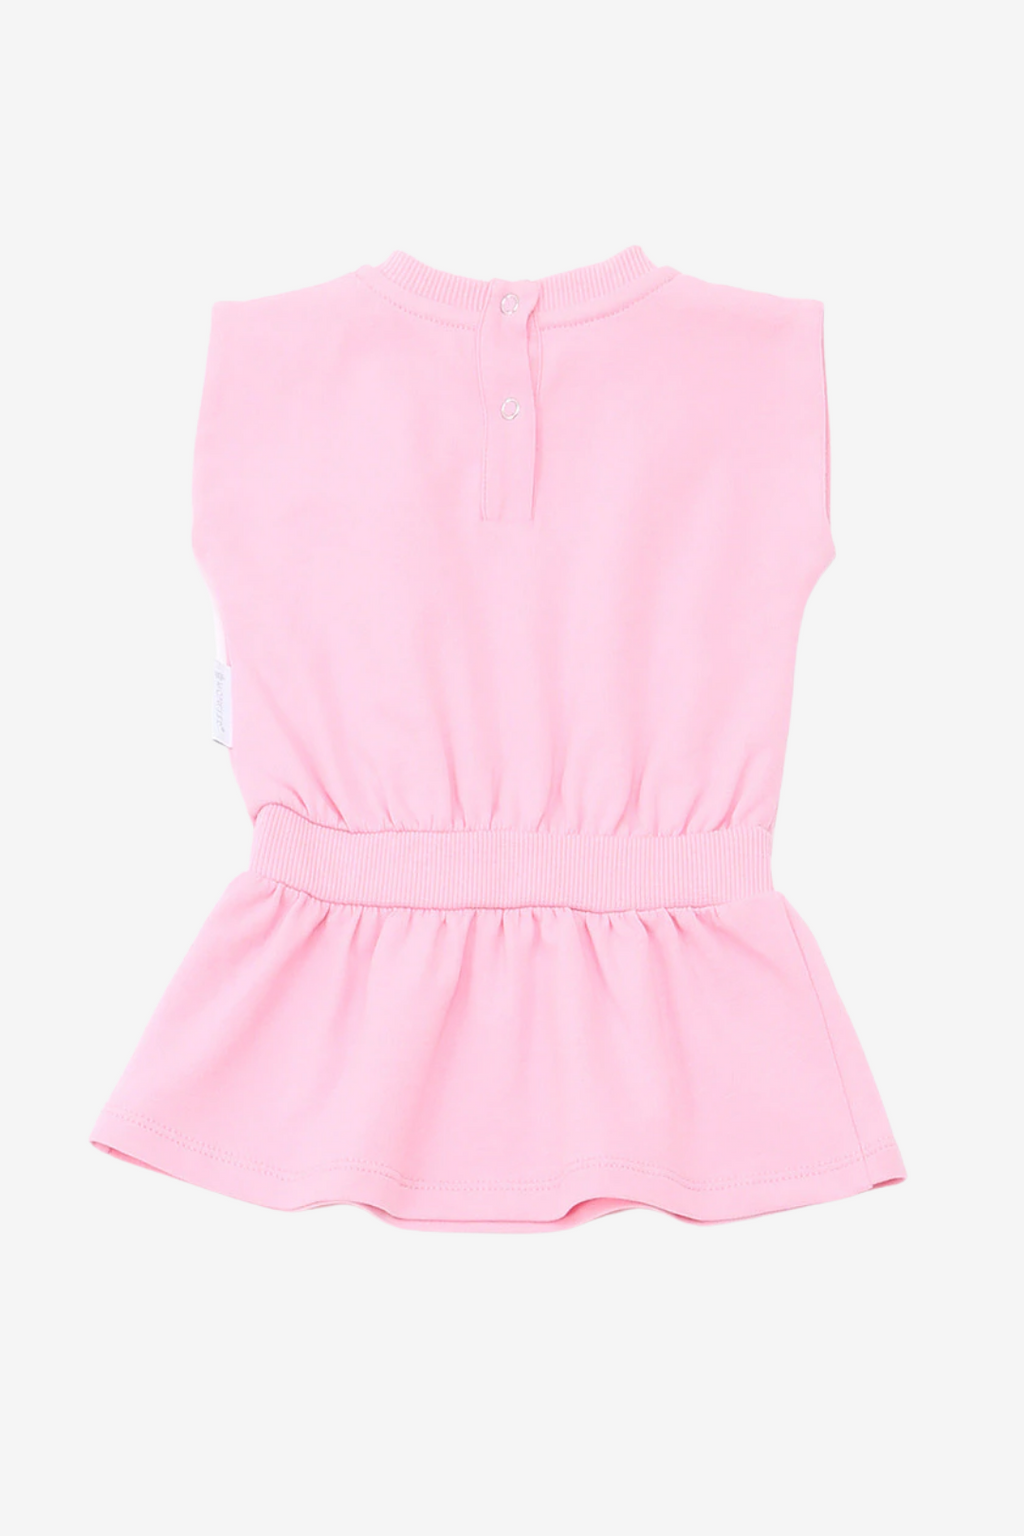 Pink Baby Tennis Dress Moncler Logo